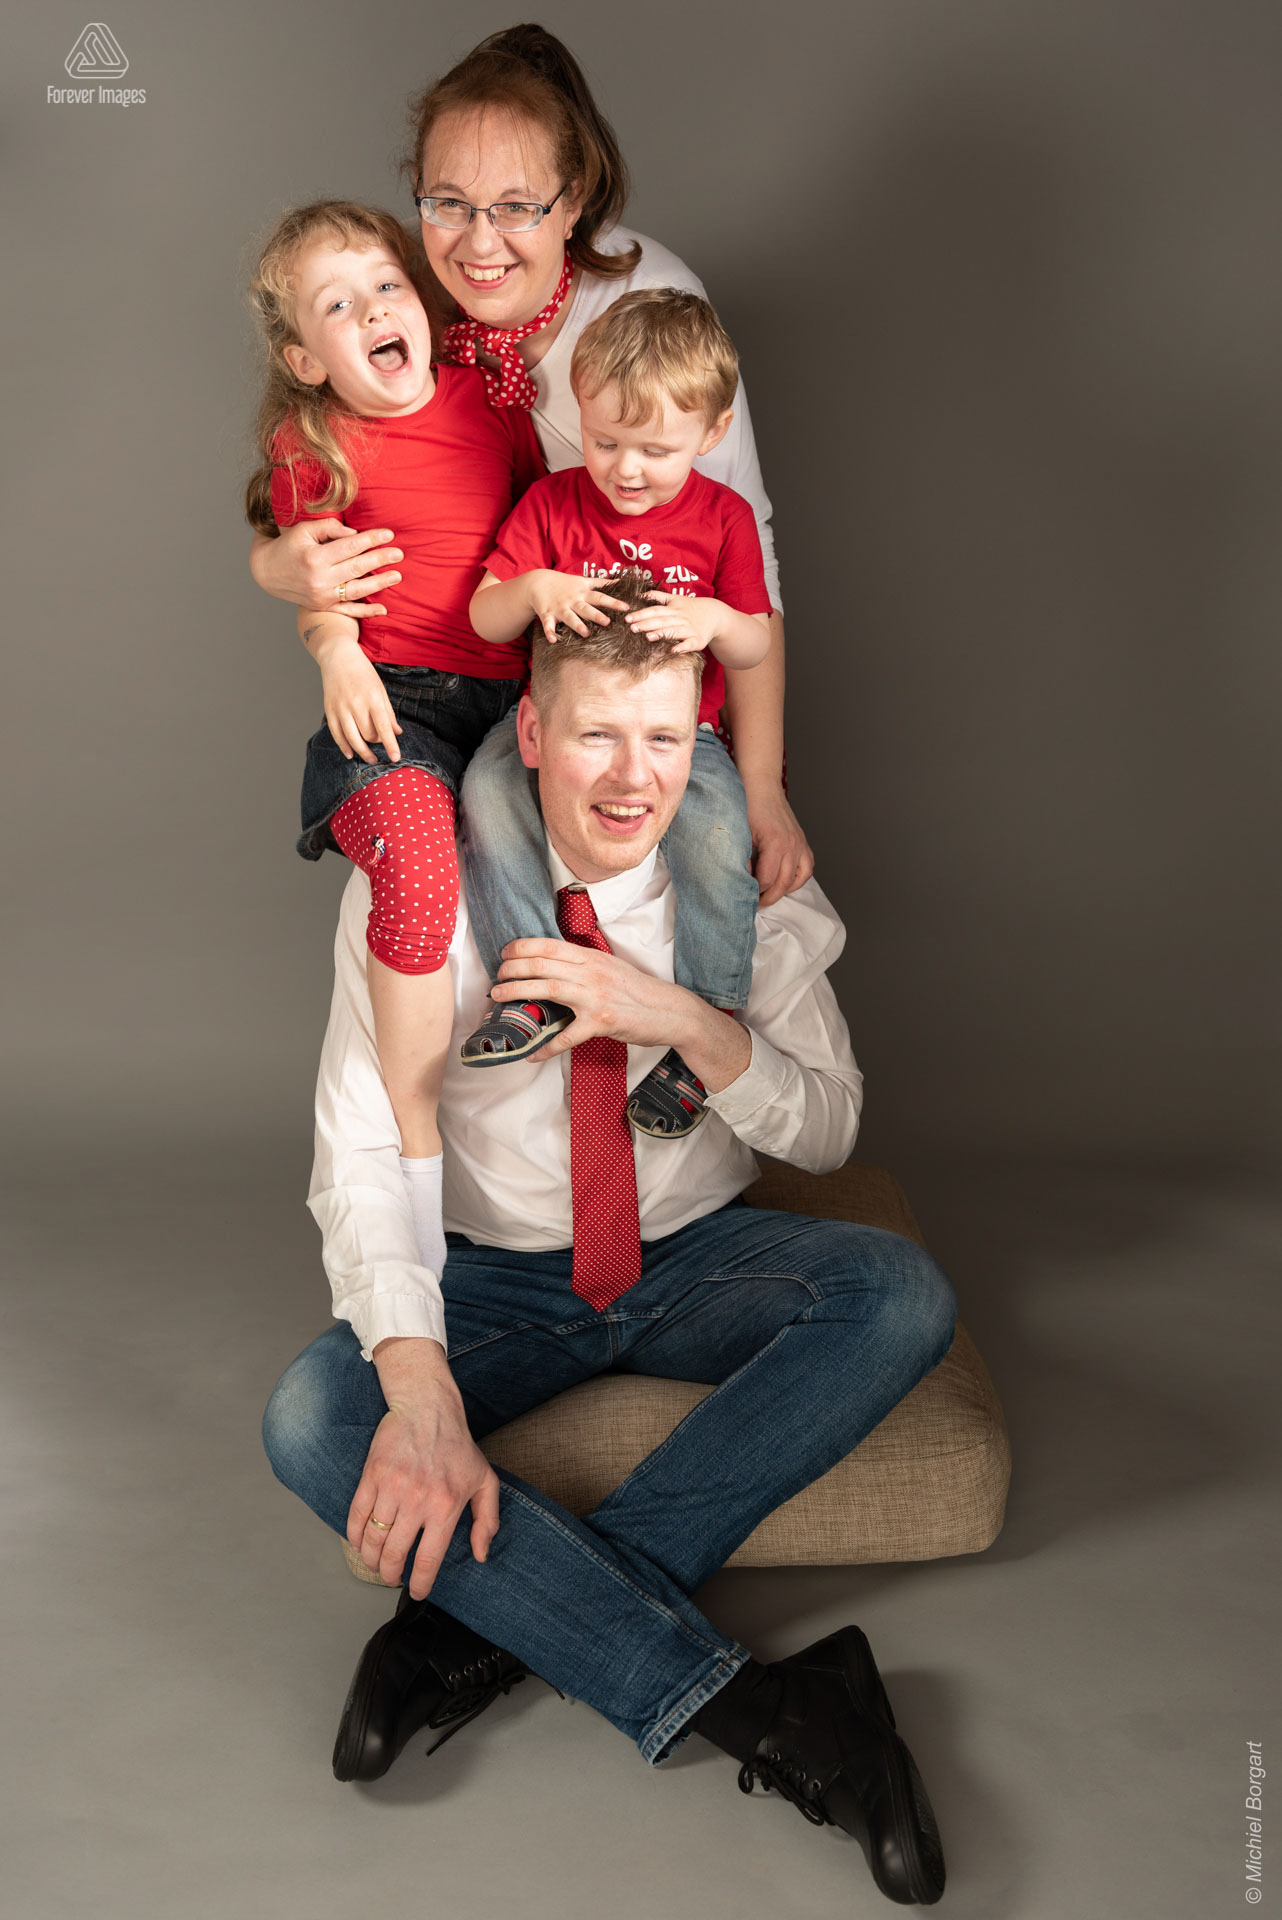 Vrolijk familieportret allemaal in wit rood gekleed | Familie Ben | Portretfotograaf Michiel Borgart - Forever Images.